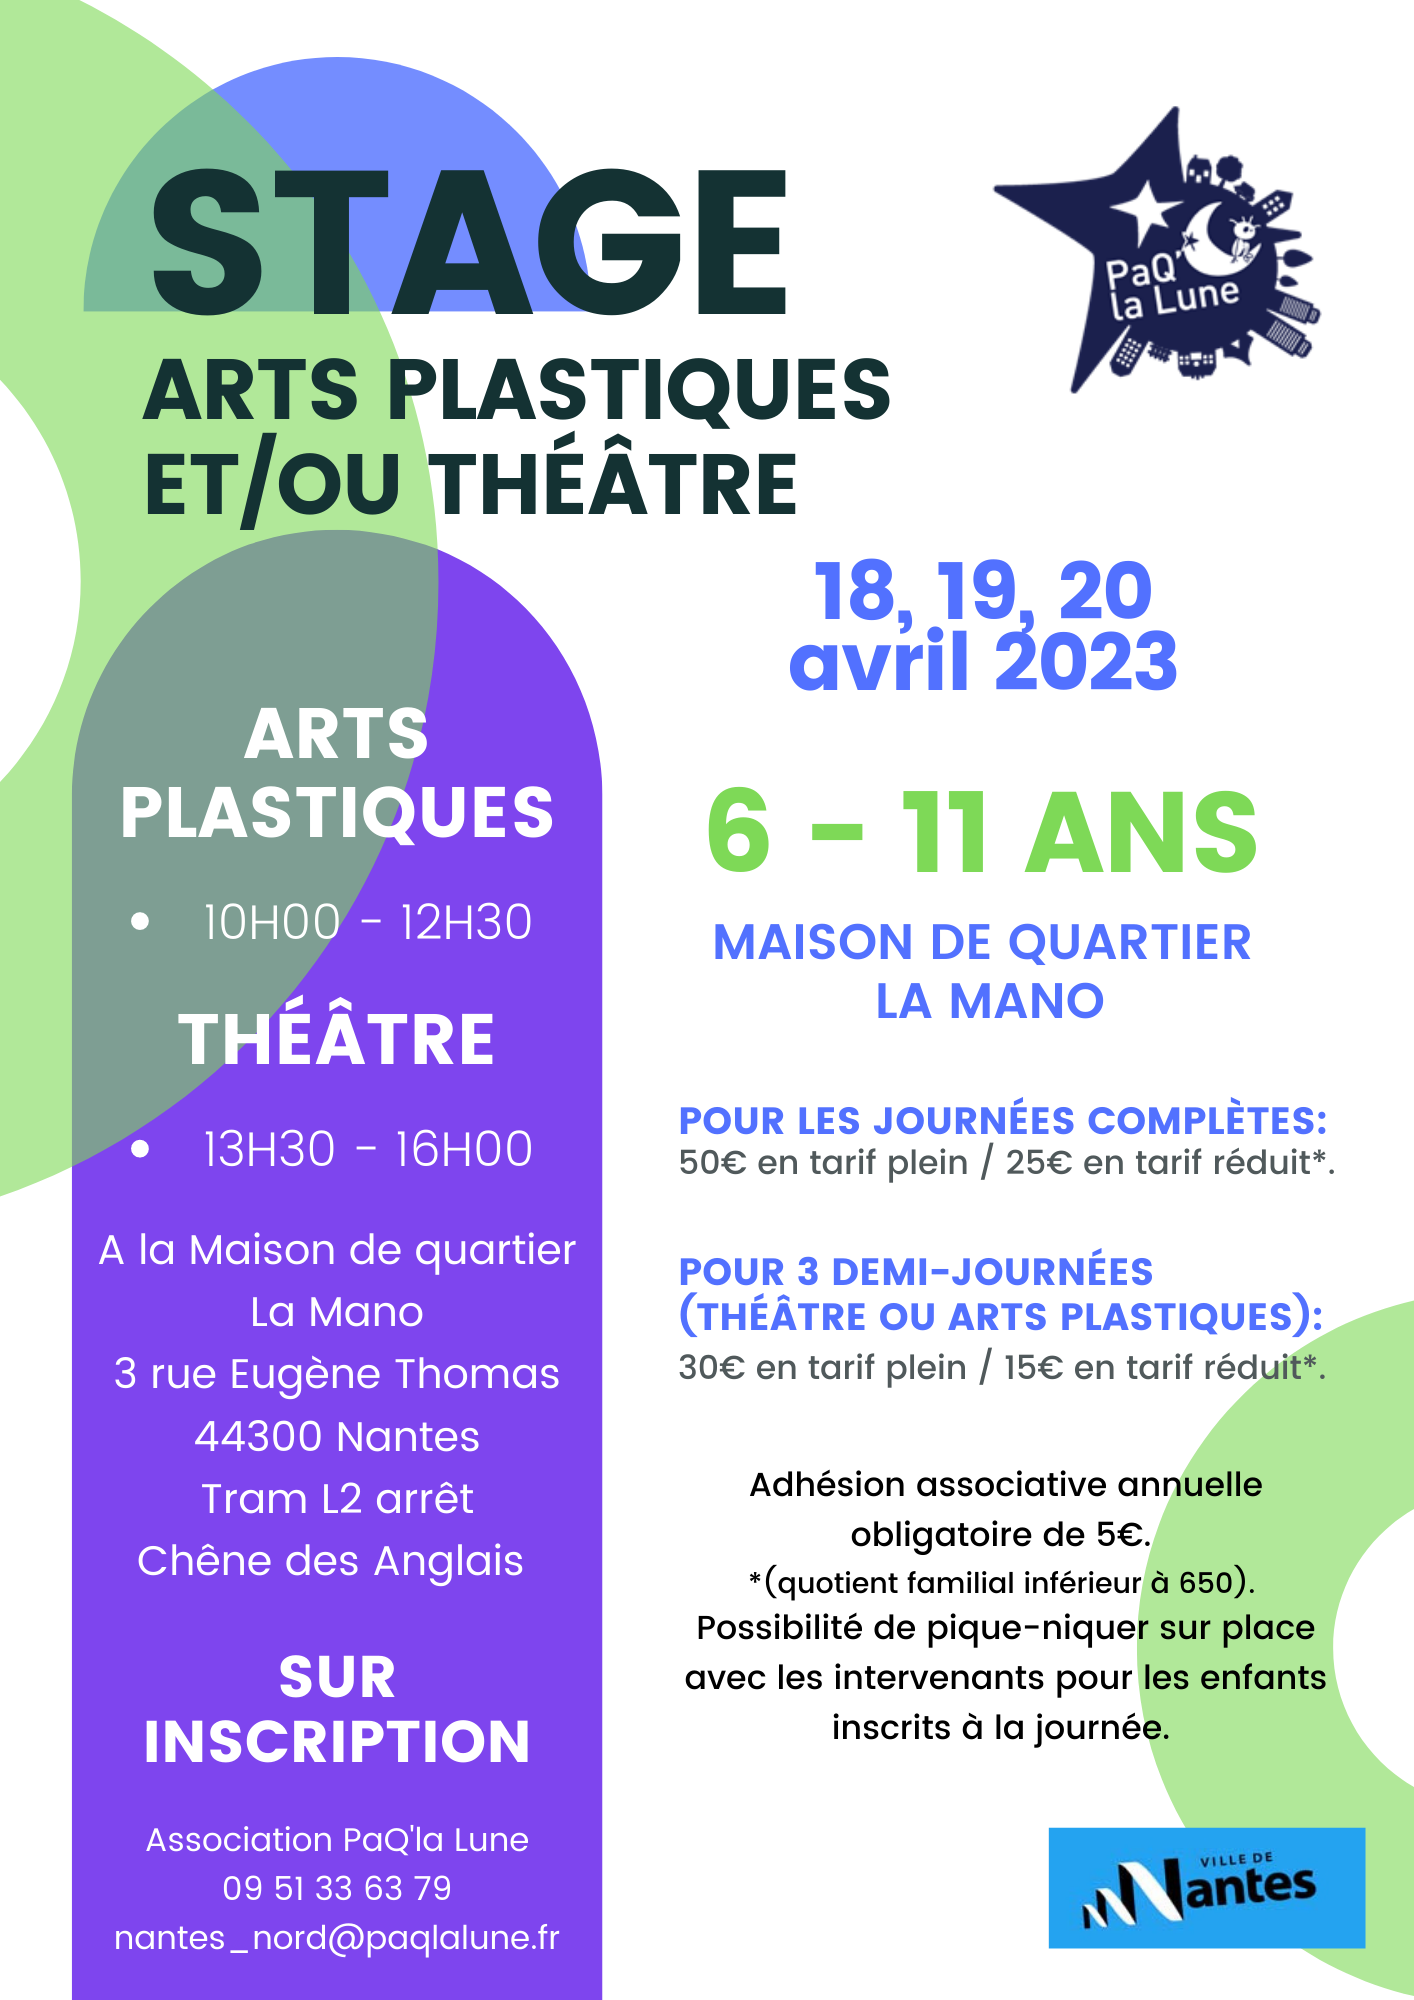 Stages Théâtre et Arts plastiques de PaQ’la Lune